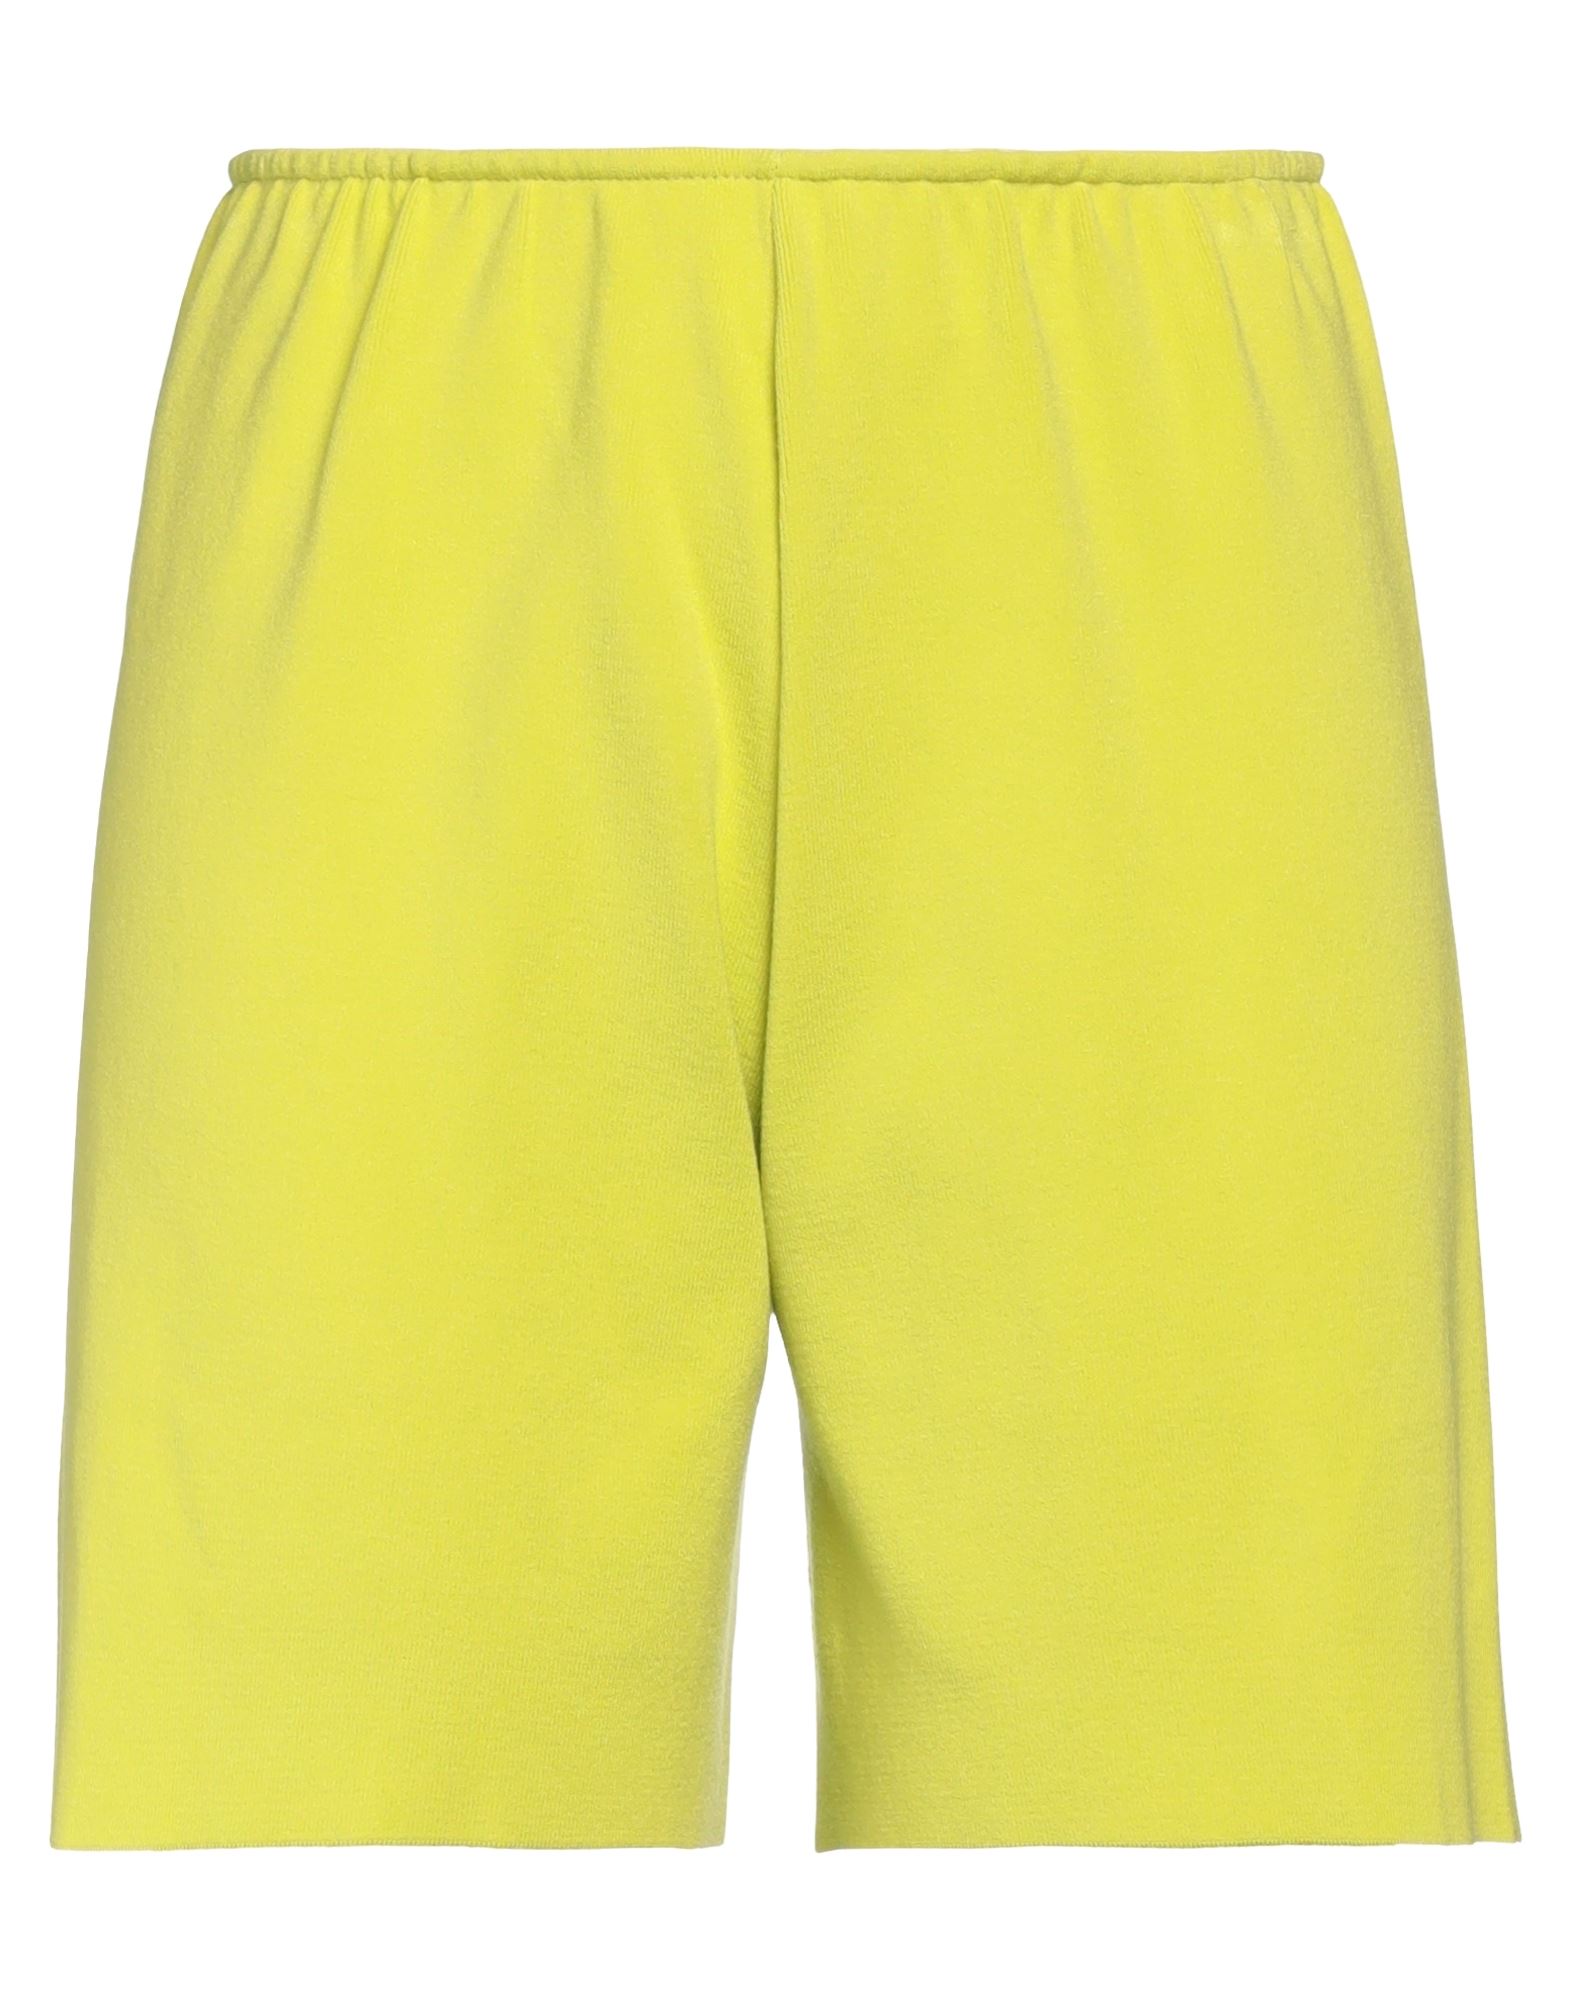 Kaos Woman Shorts & Bermuda Shorts Acid Green Size M Viscose, Polyester